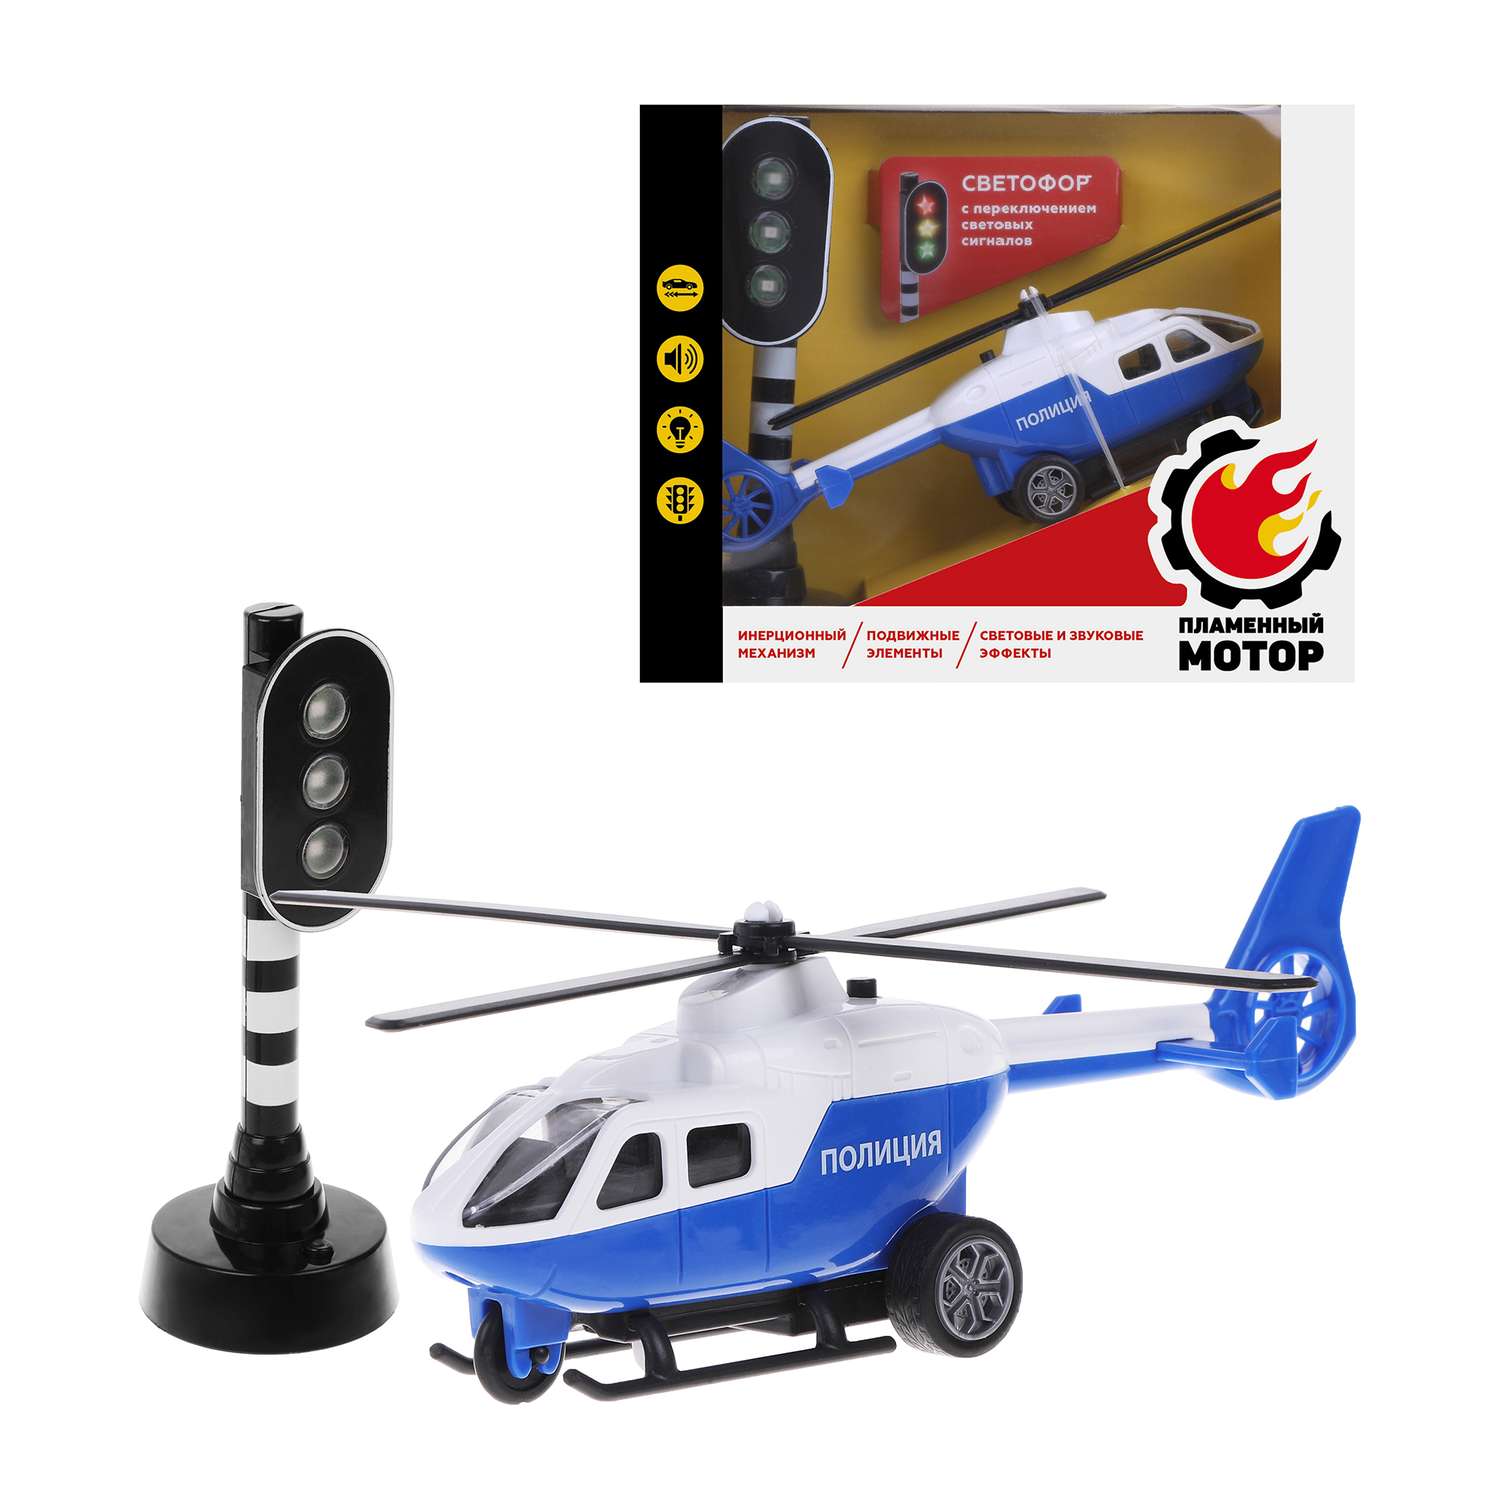 Вертолет Пламенный мотор Полиция со светом и звуком 870850 - фото 3